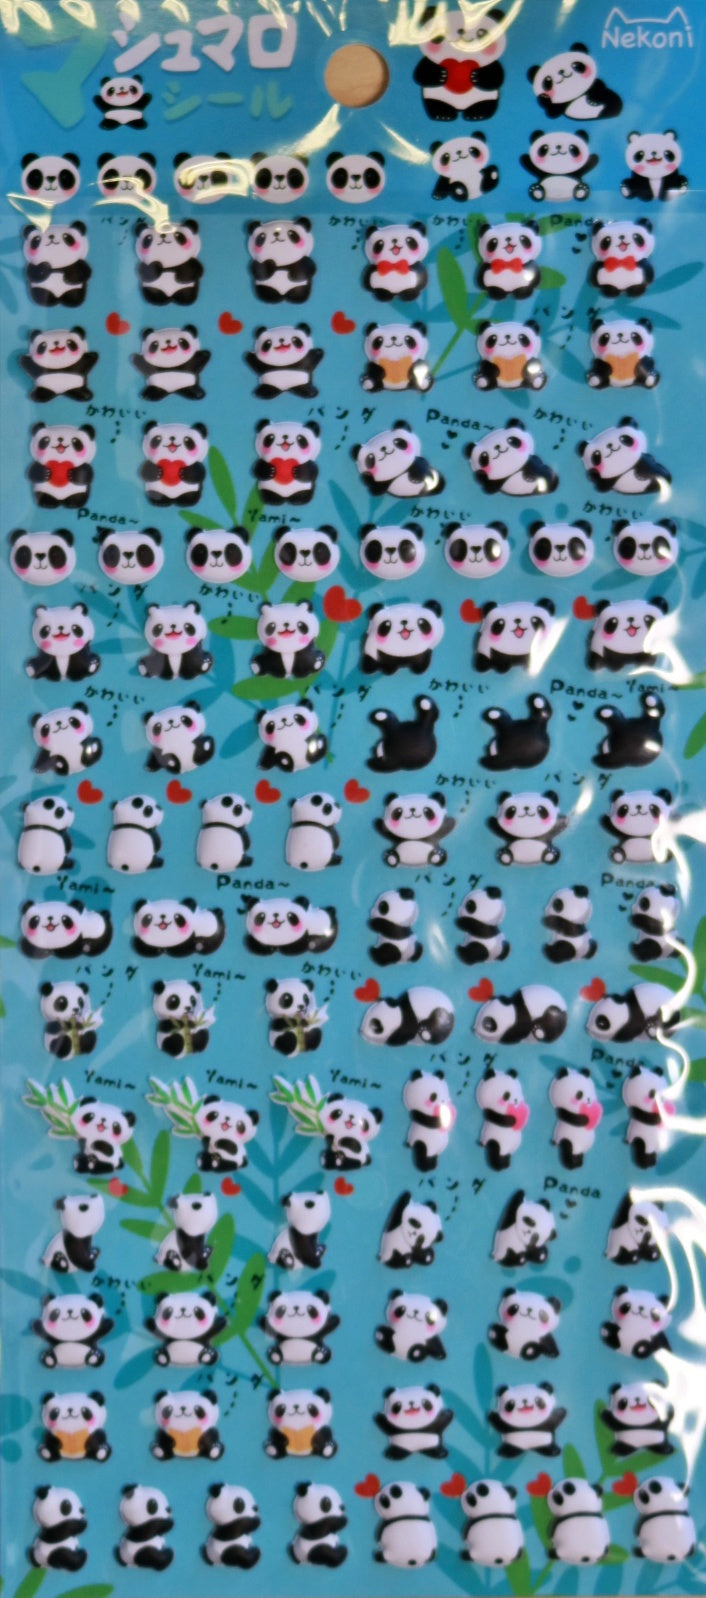 Nekoni Panda Stickers 85549